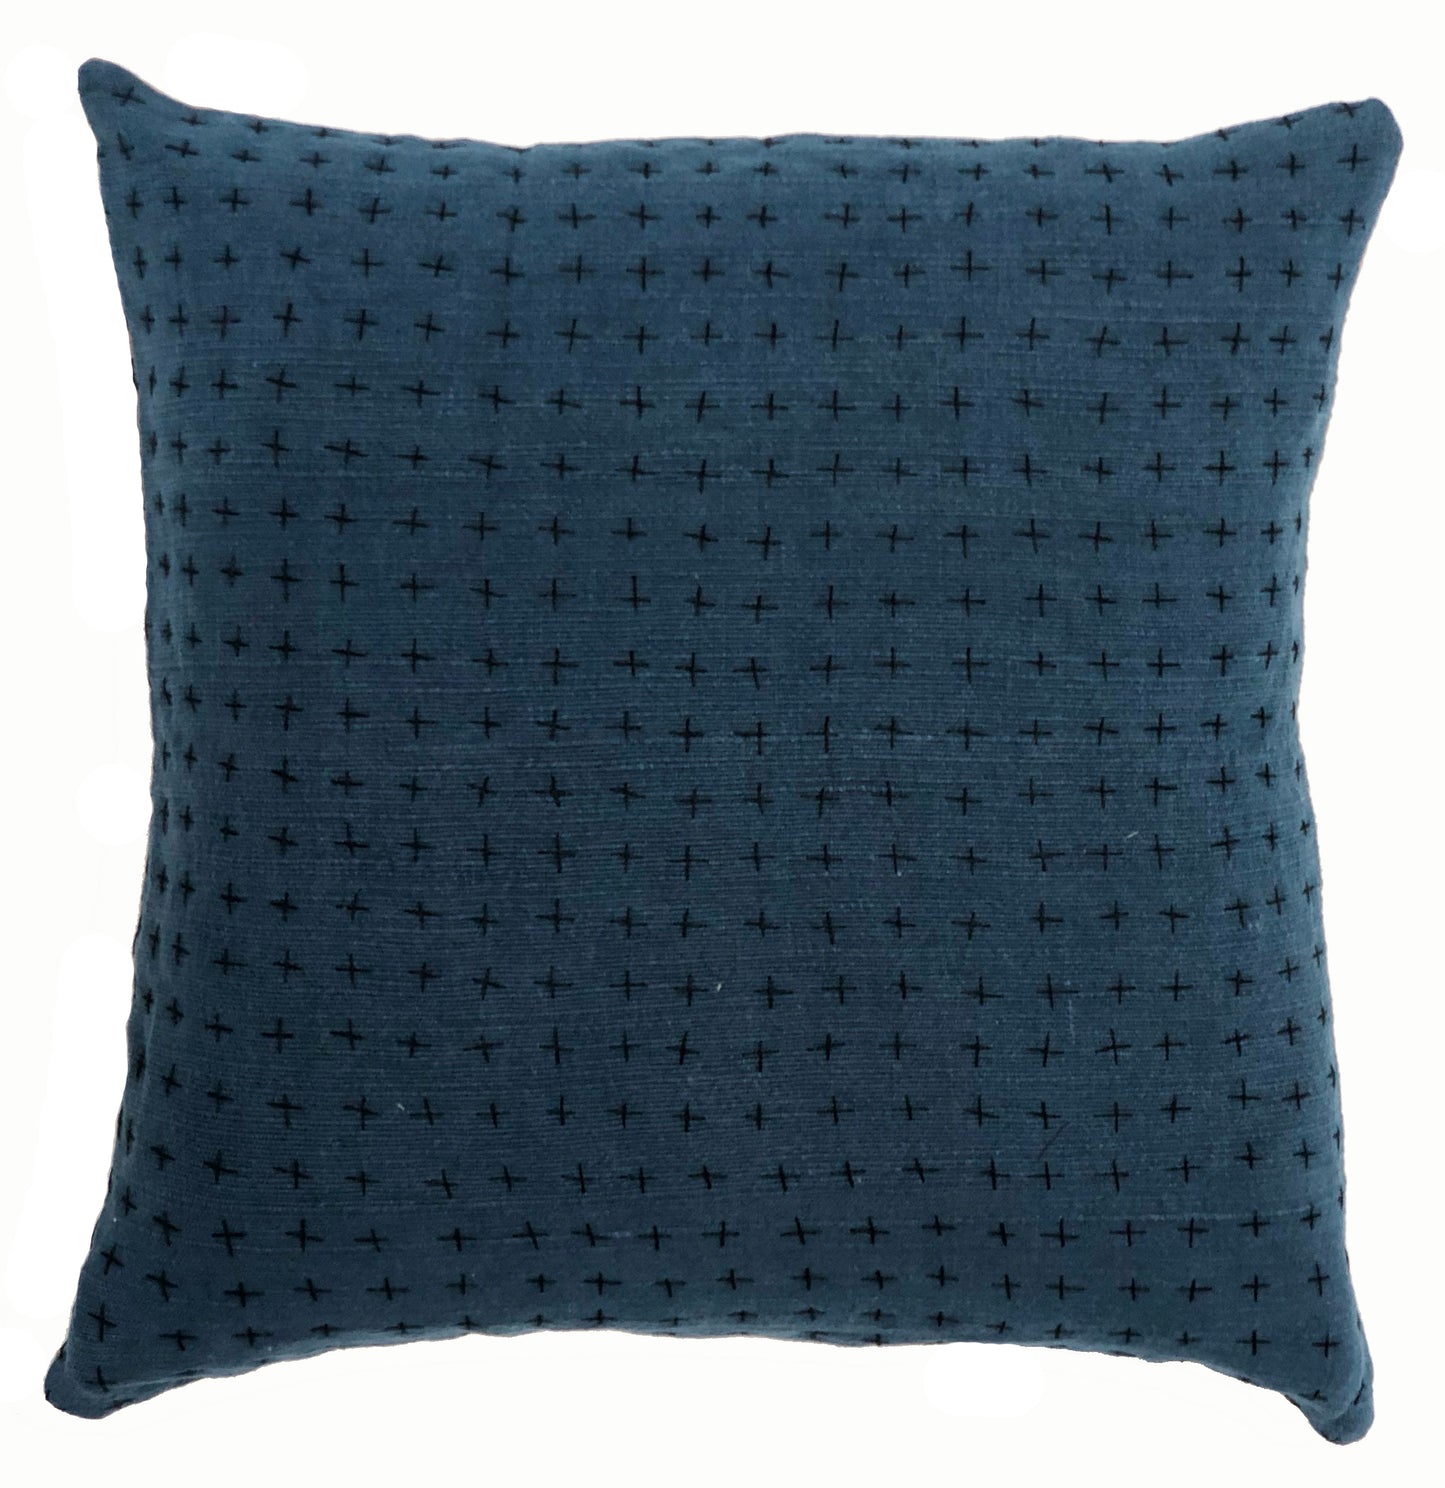 Indigo & Himalayan Pillow Cover 18x18in